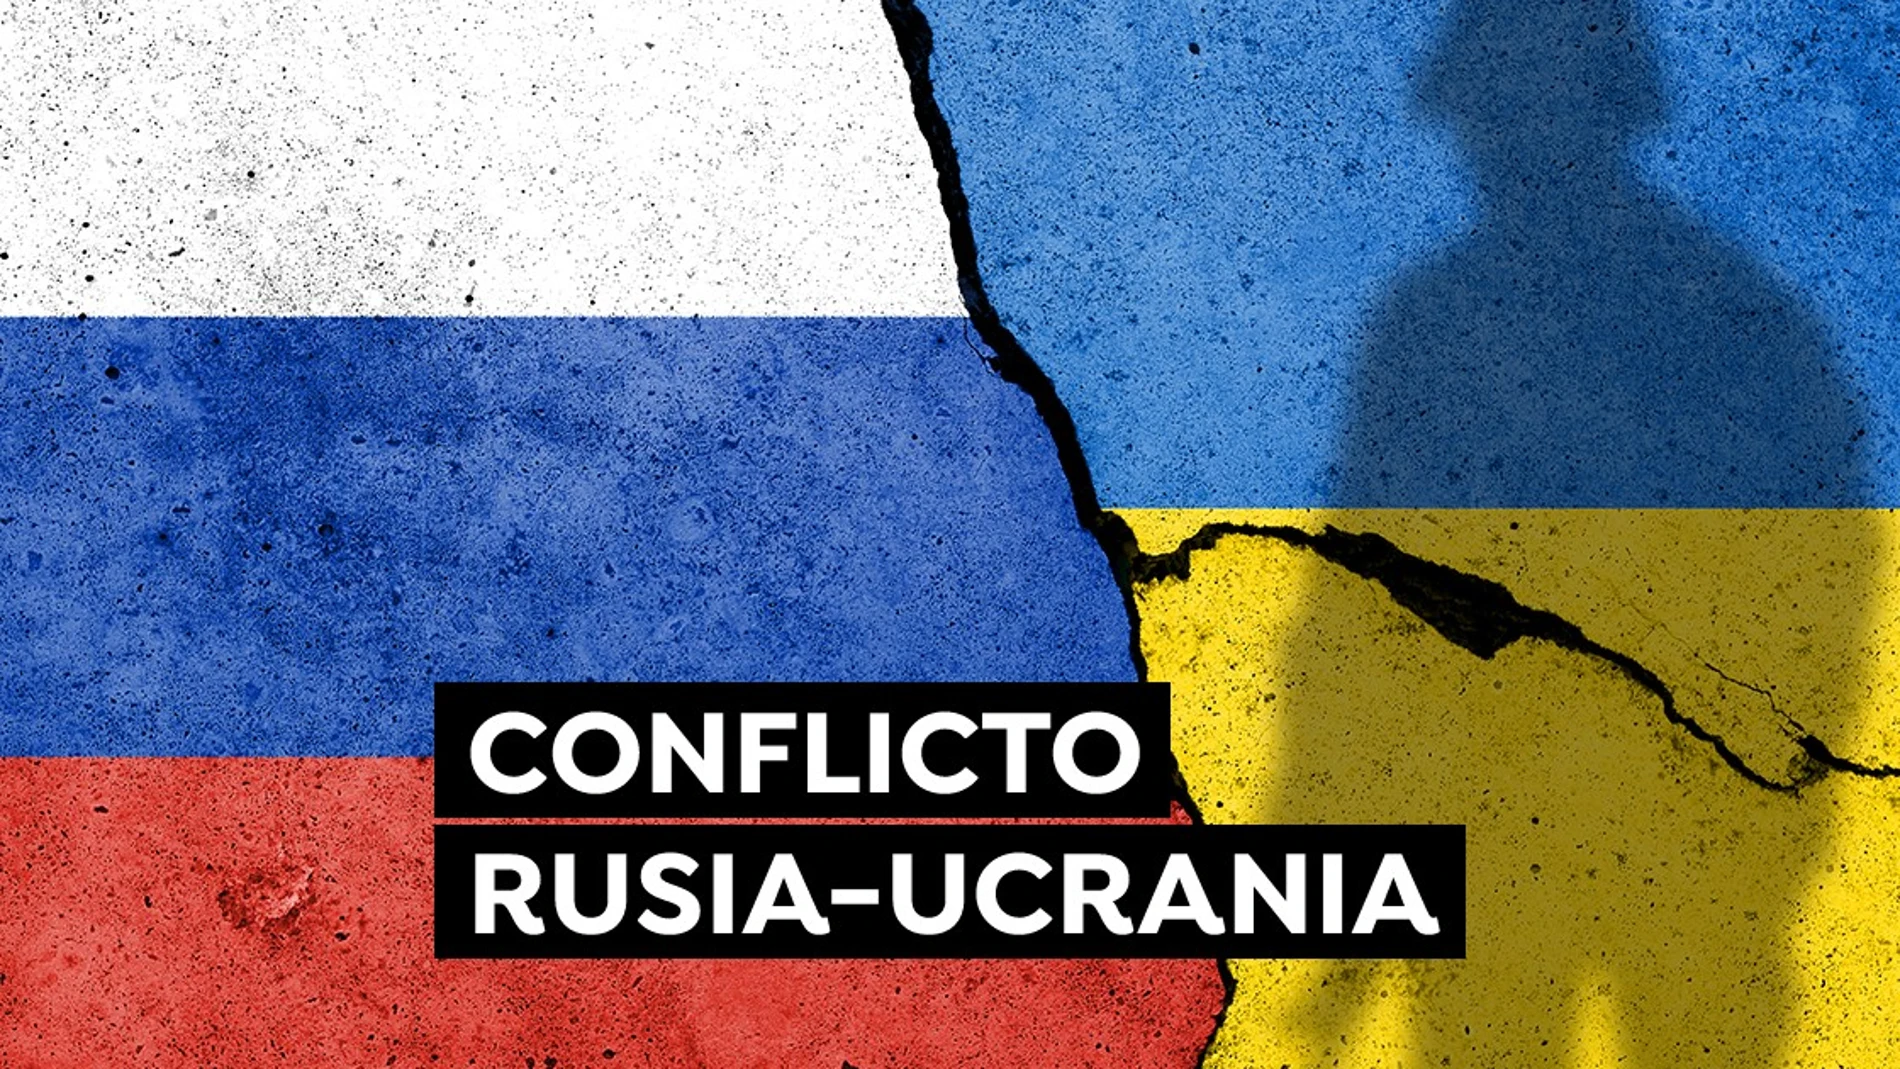 Conflicto Rusia-Ucrania: Últimas noticias de la tensión bélica y una posible invasión